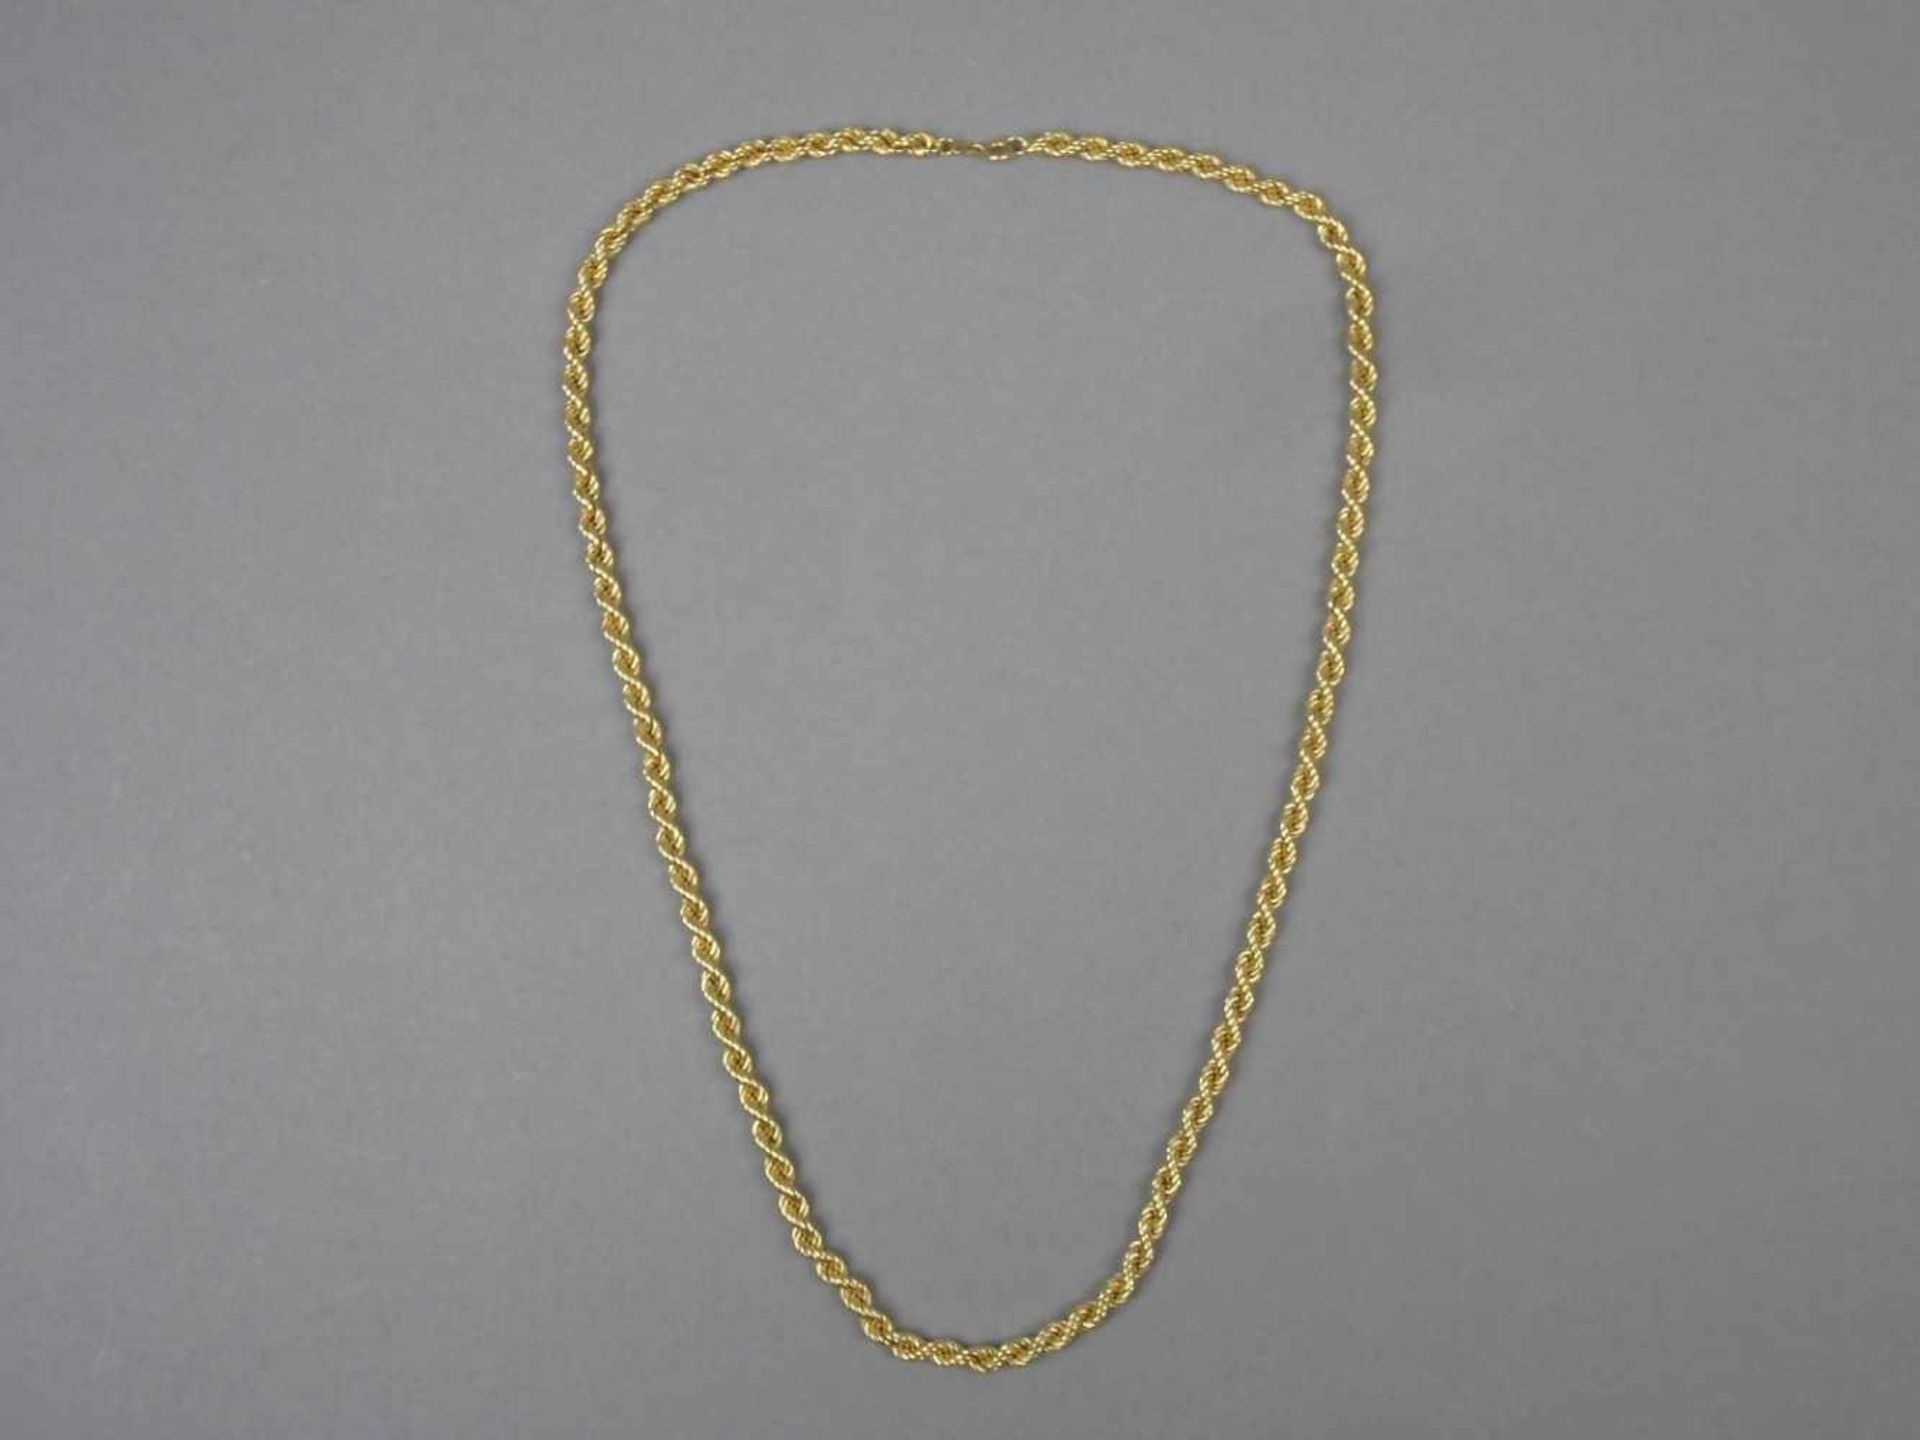 KORDELKETTE / KETTE, 750er Gelbgold (20,8g), Ringverschluss. Länge: ca. 63cmDieses Los wird in einer